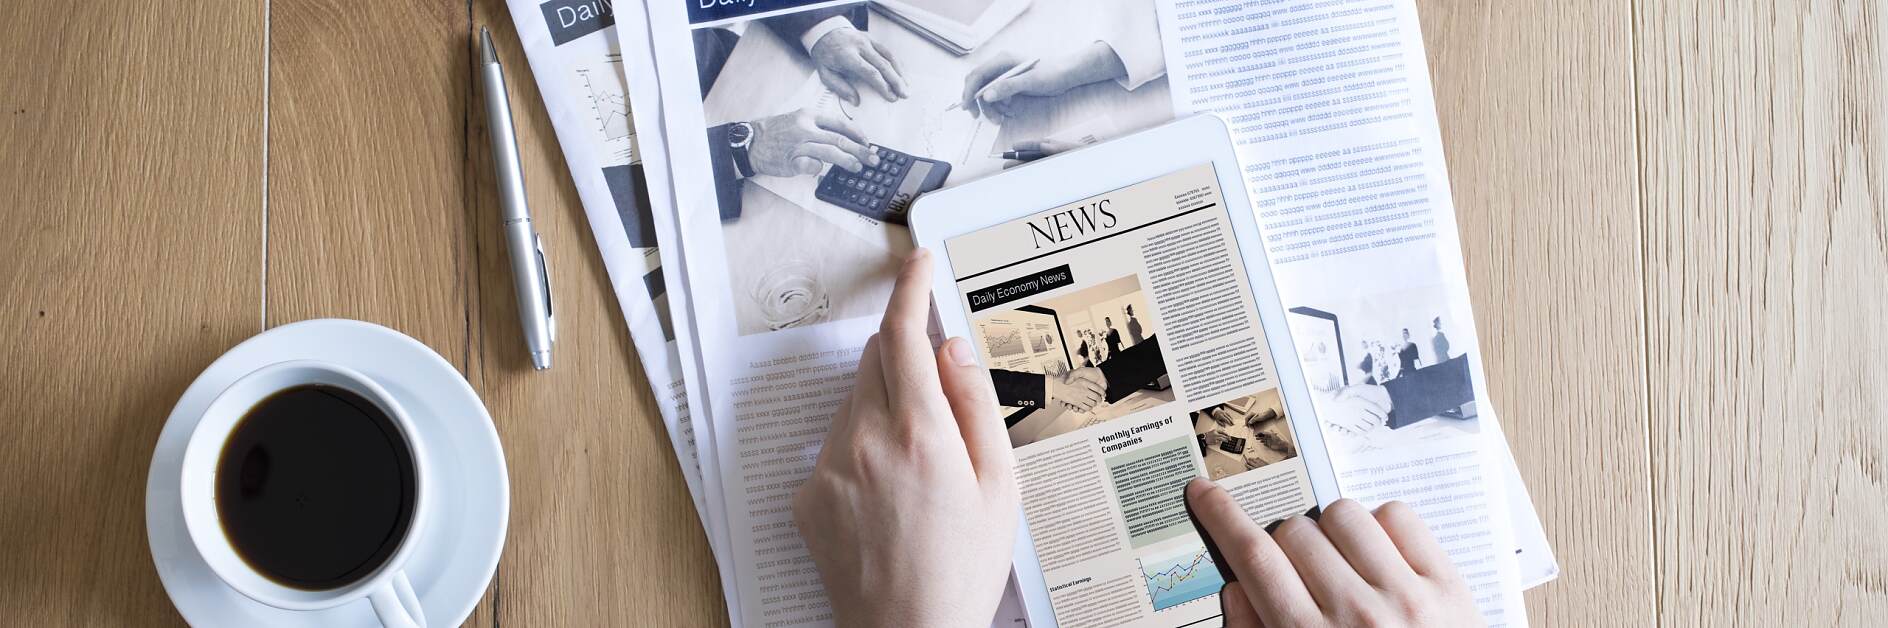 Laikraščio ir iPad derinys Paper&Print